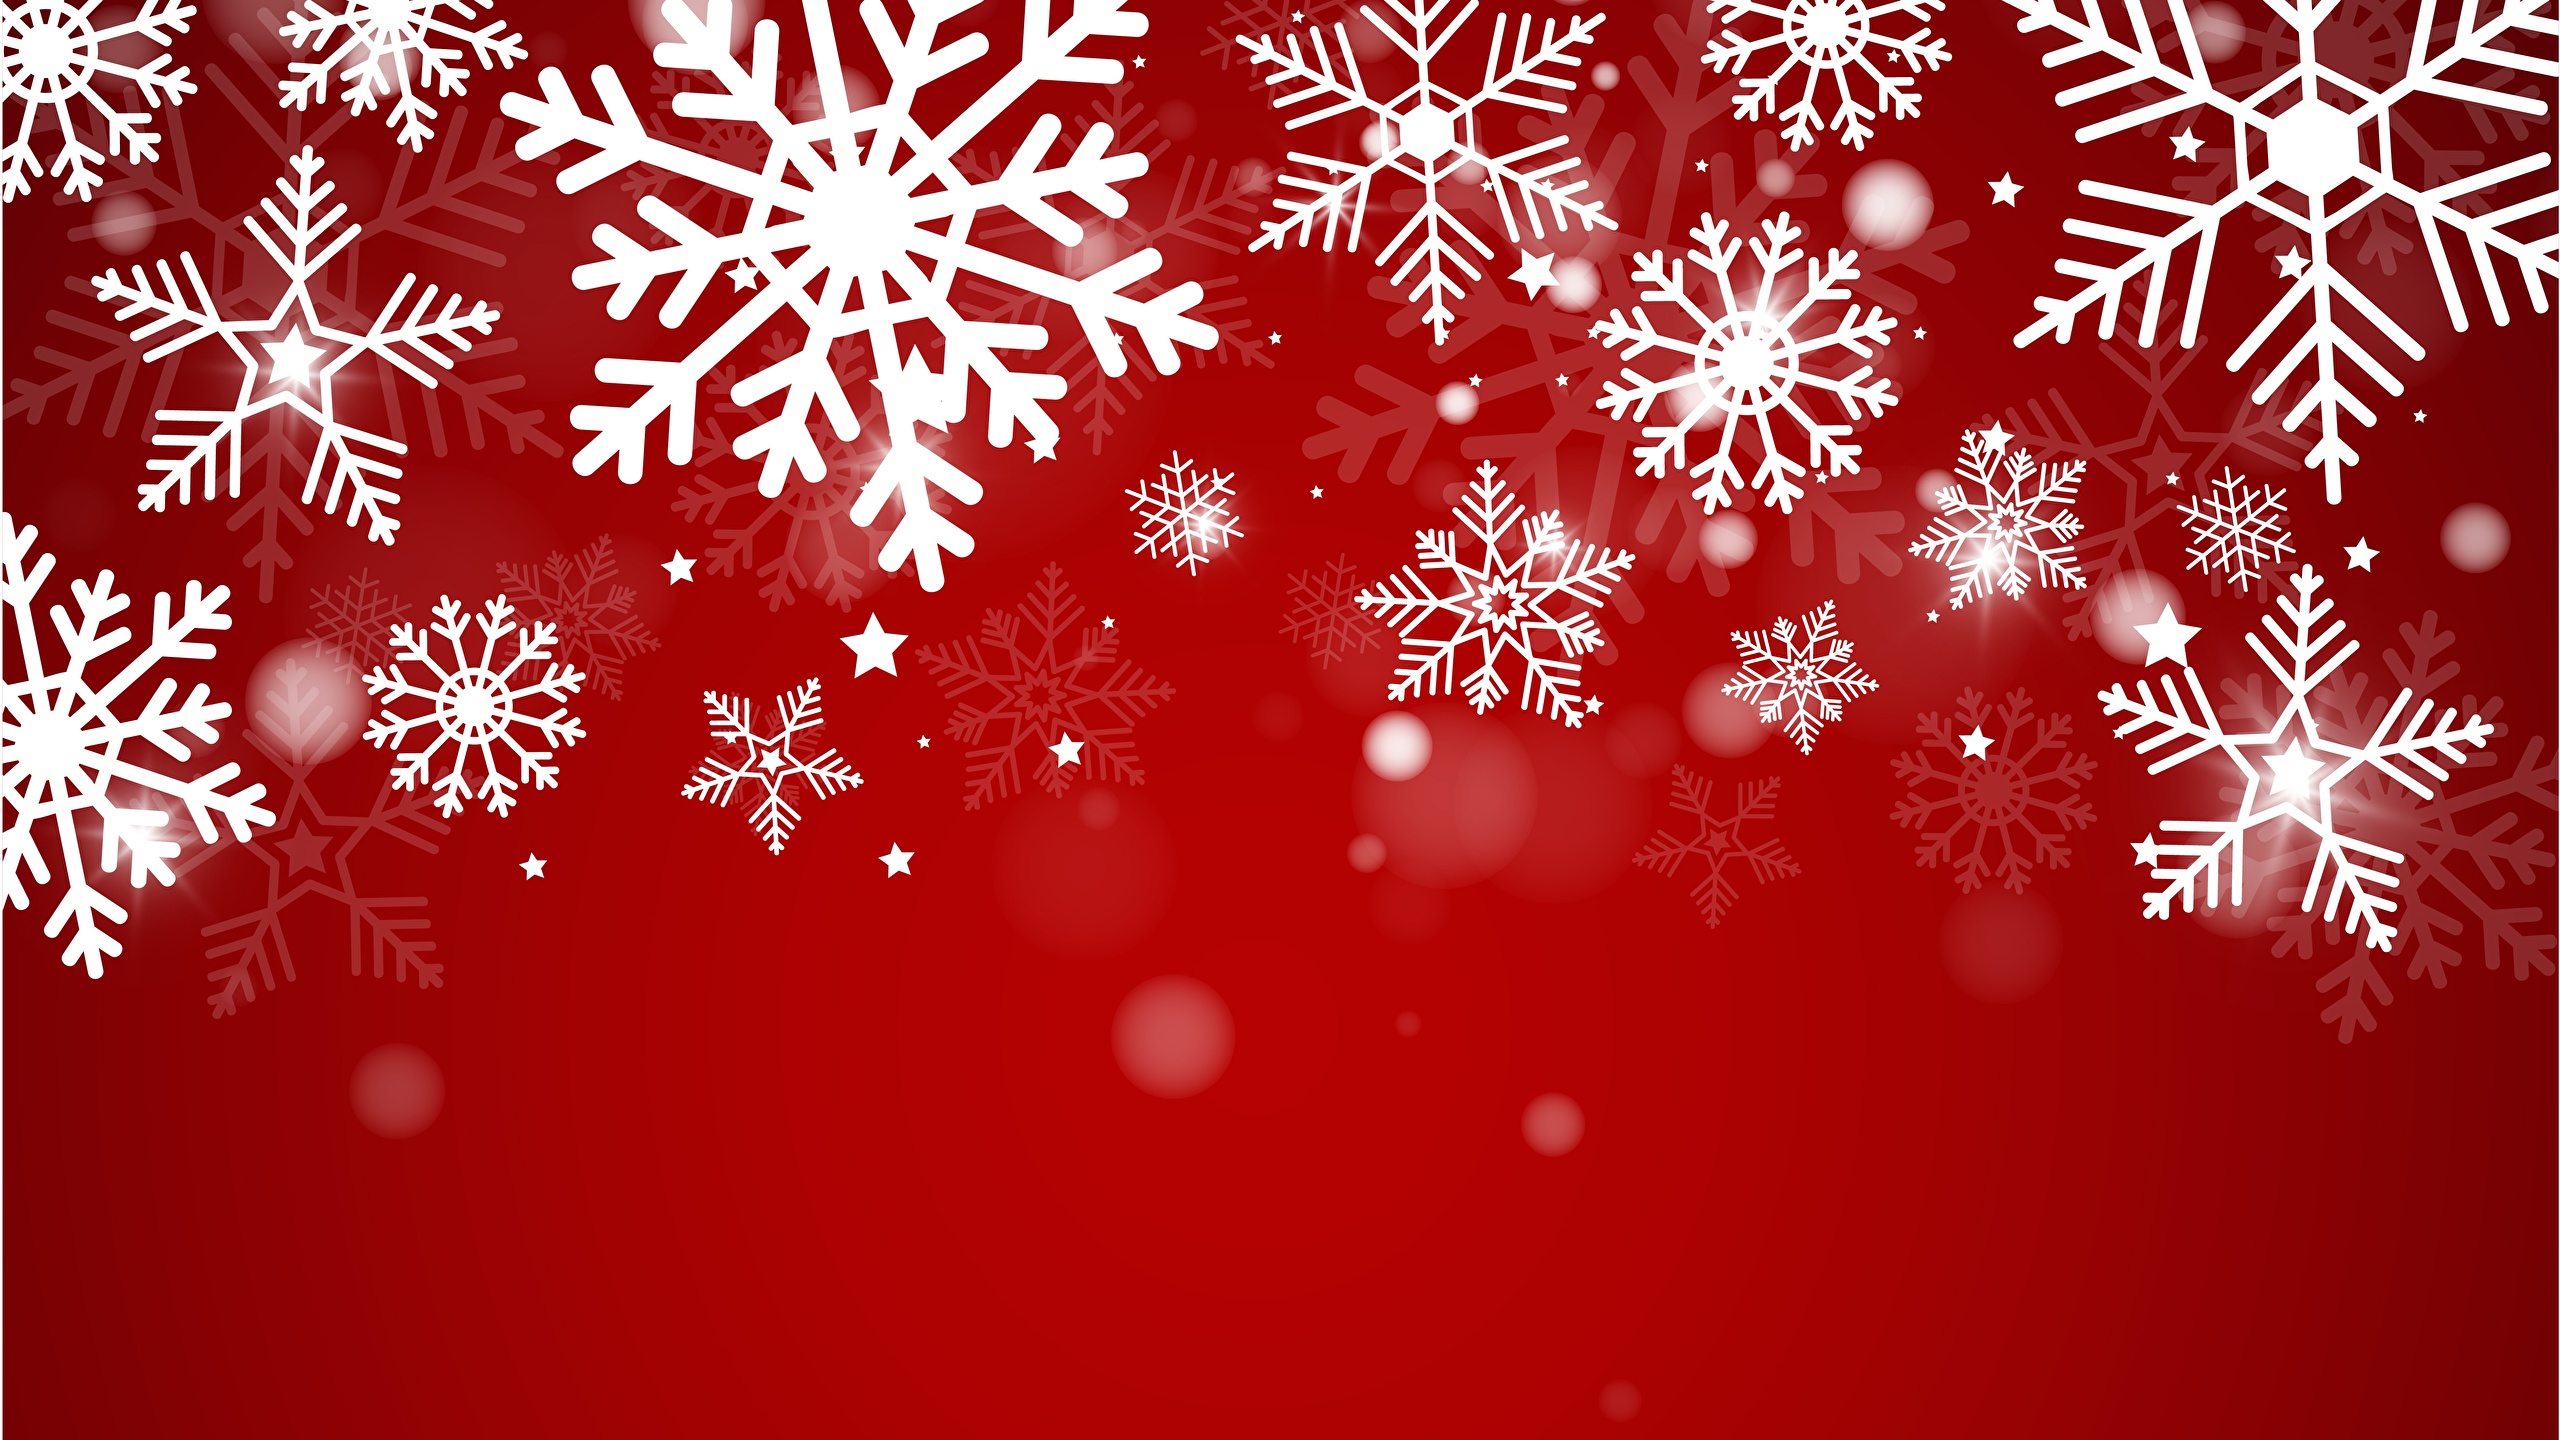 壁紙 2560x1440 新年 赤の背景 雪の結晶 テンプレートグリーティングカード ダウンロード 写真